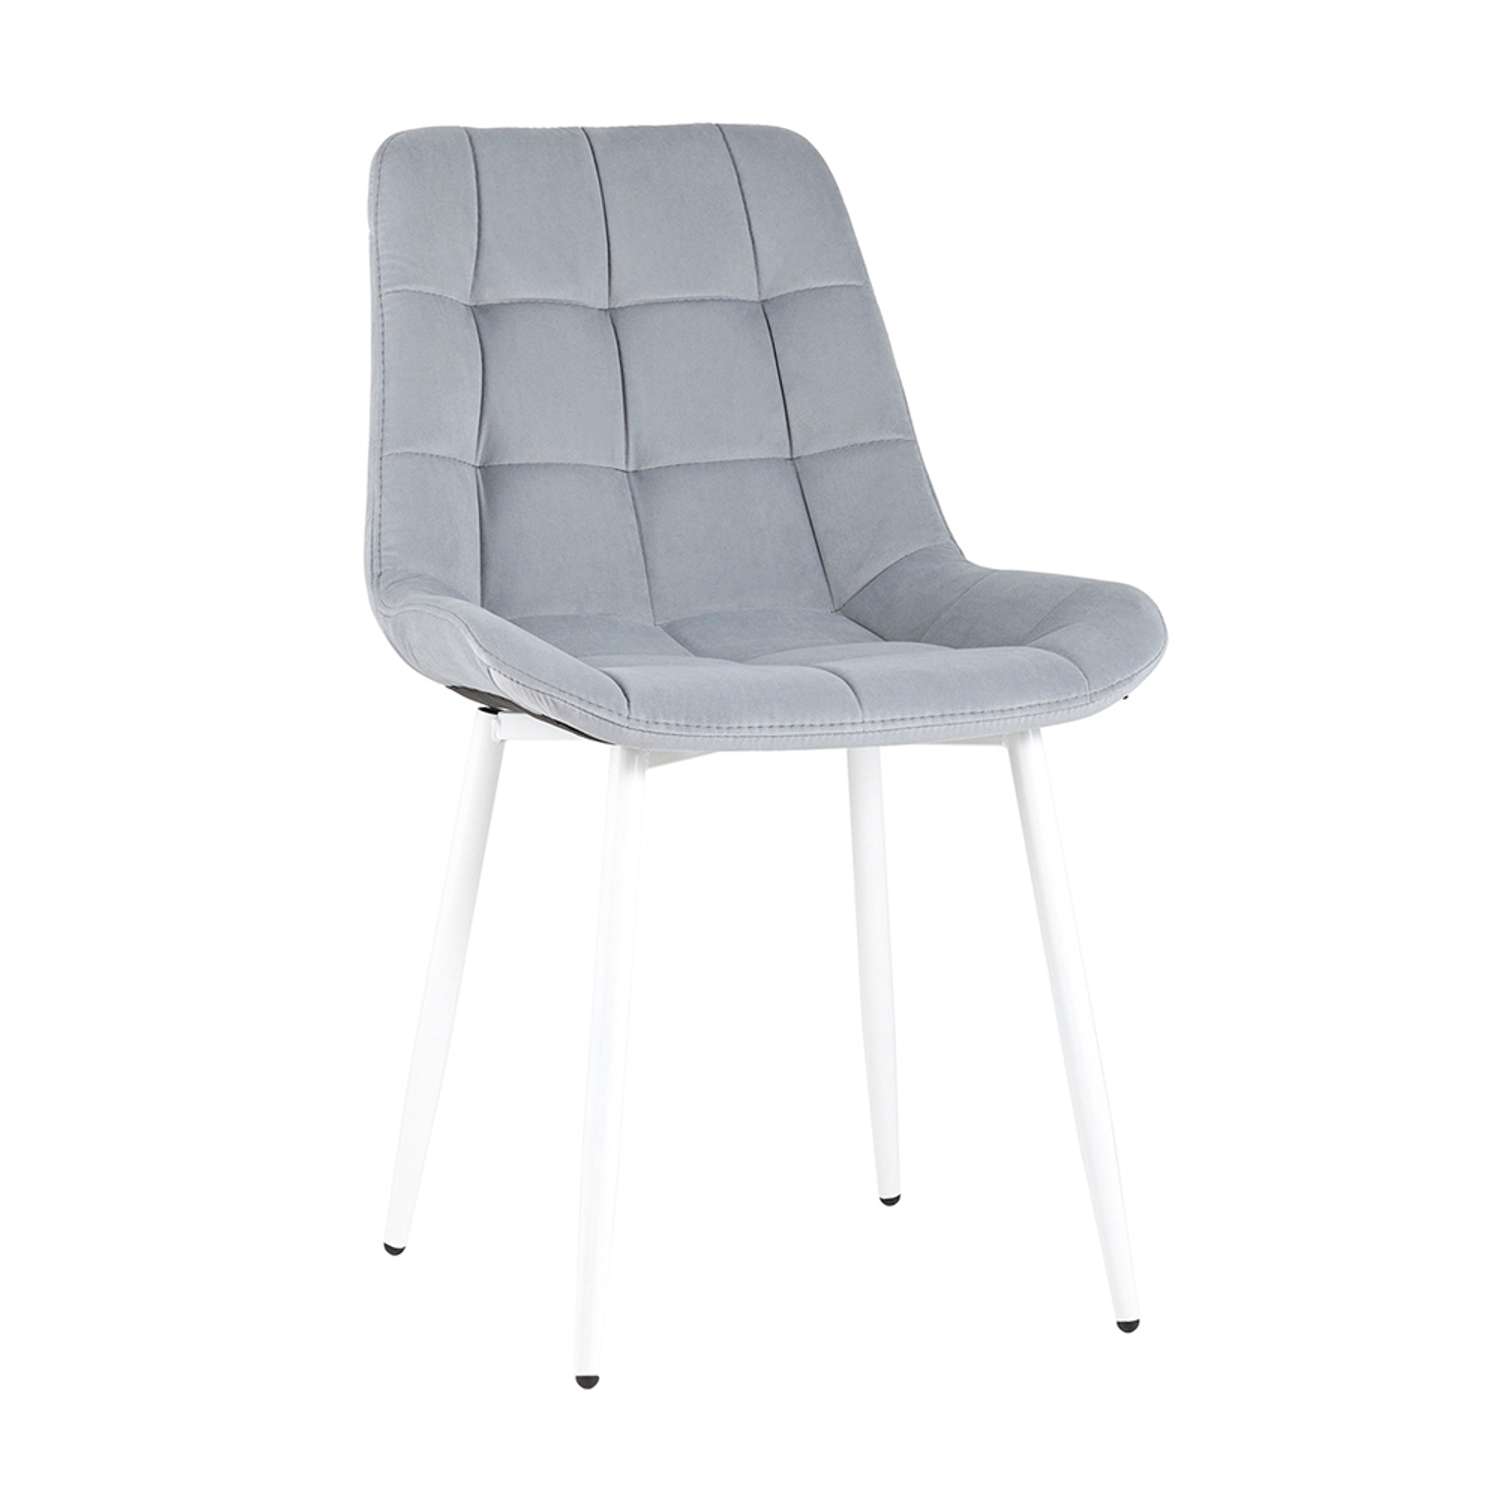 Комплект стульев Stool Group для кухни 4 шт Флекс светло-серый белые ножки - фото 2